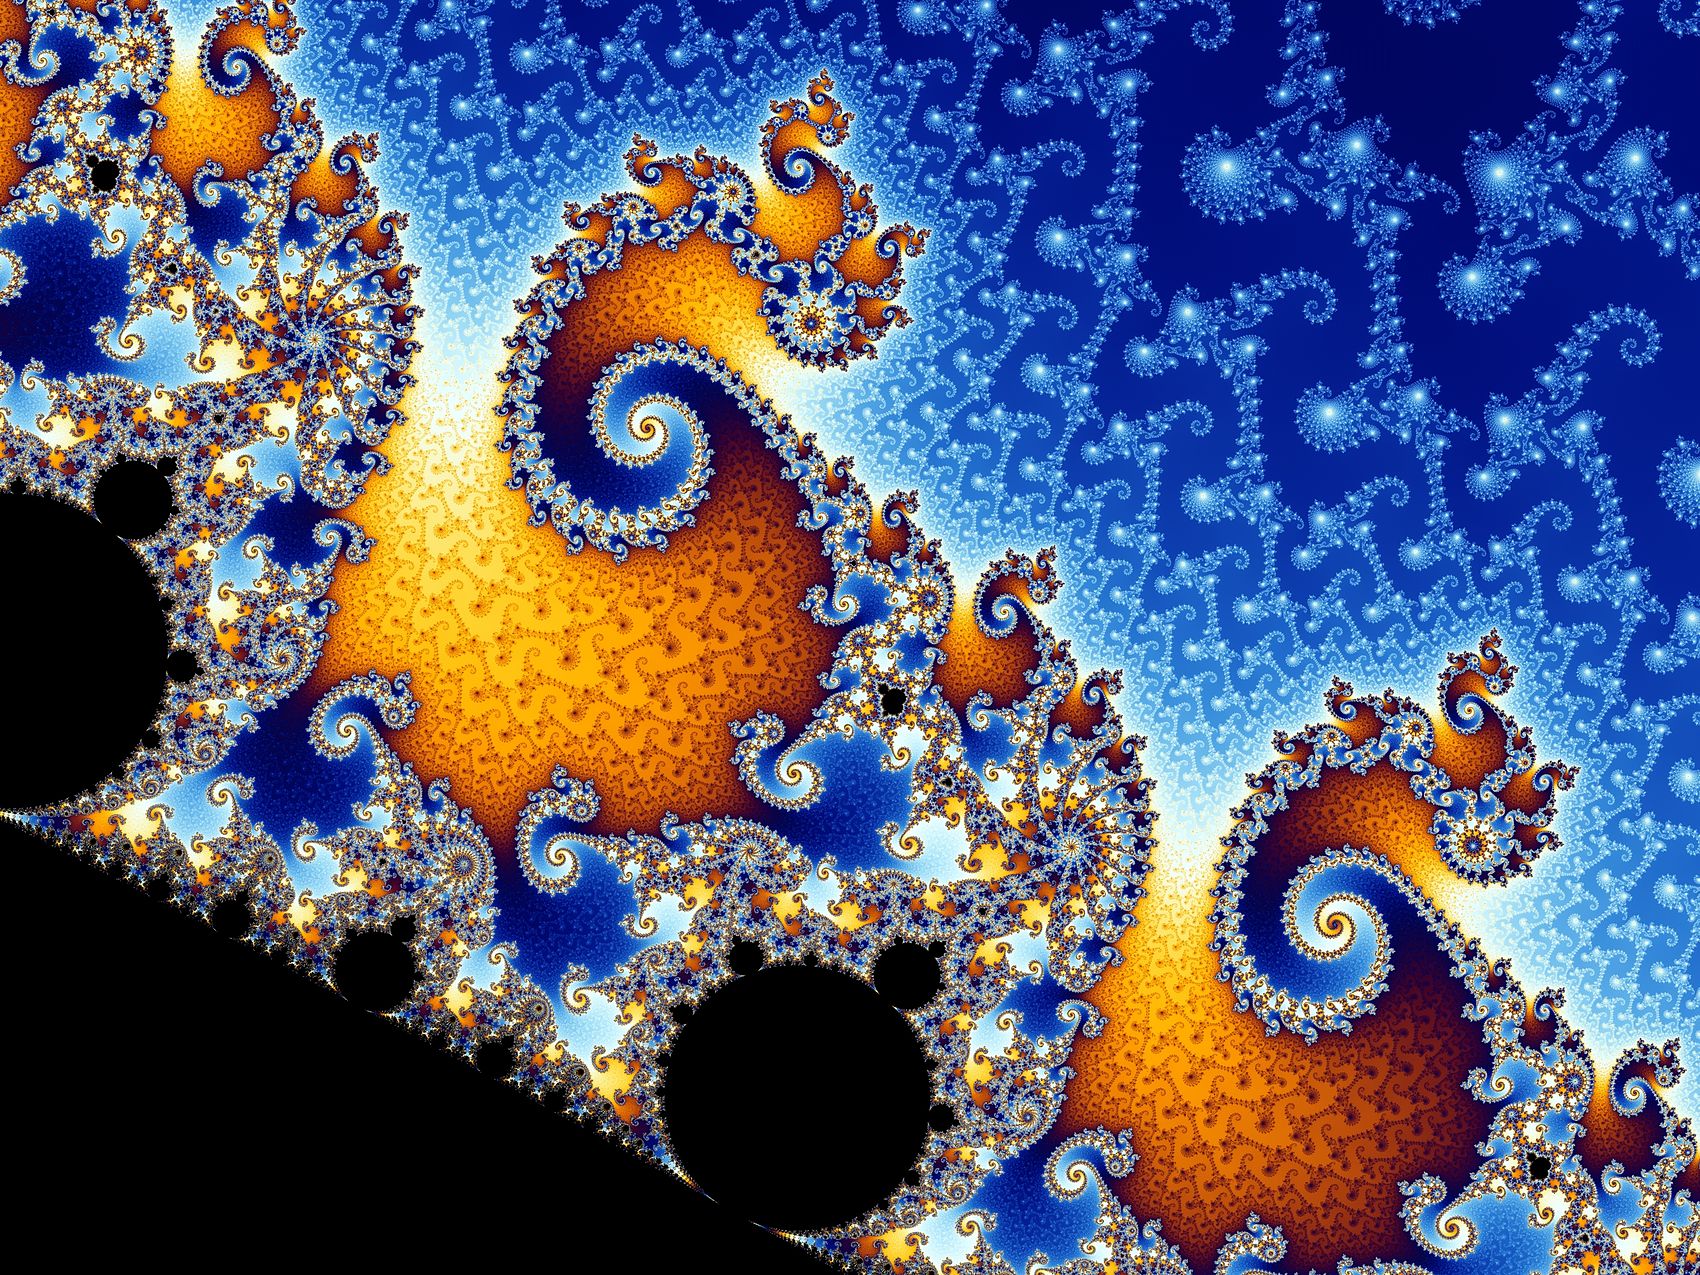 Desenvolupament de fractals mitjançant el mètode de Mandelbrot